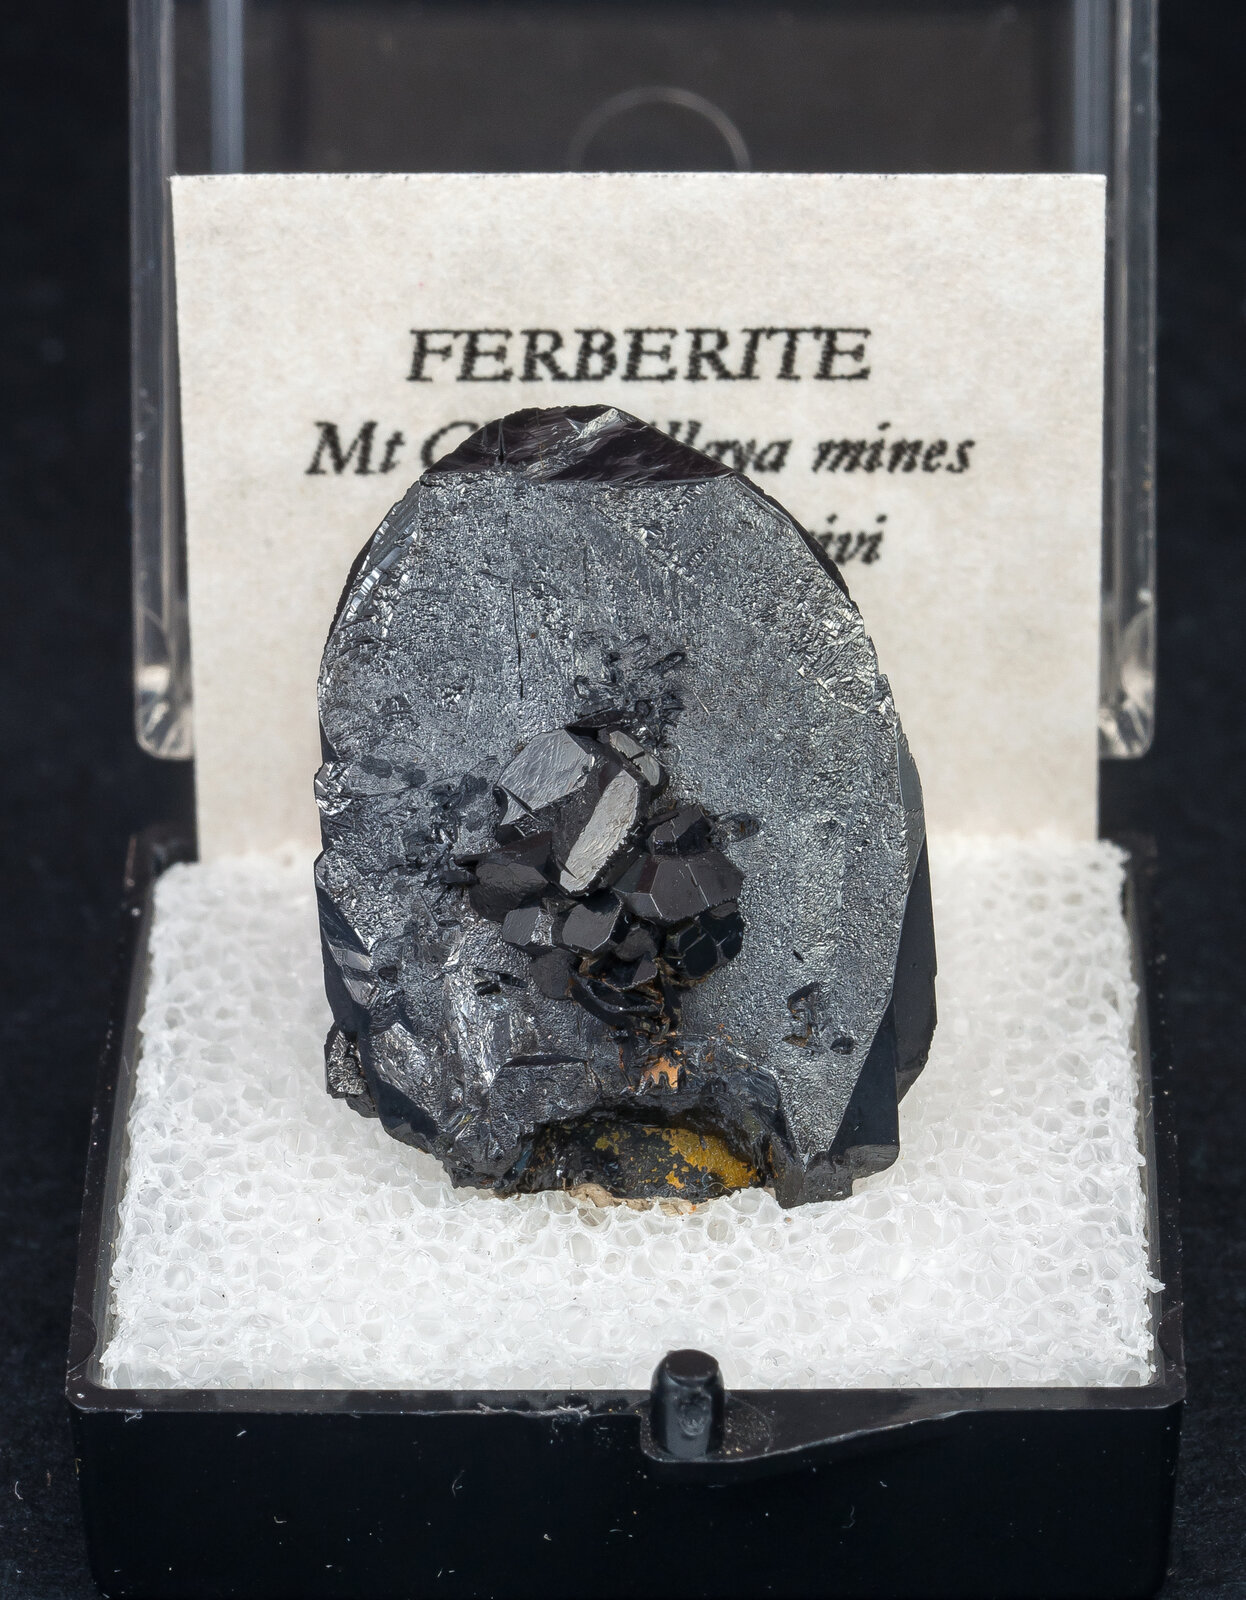 specimens/s_imagesAN3/Ferberite-TXT14AN2f1.jpg